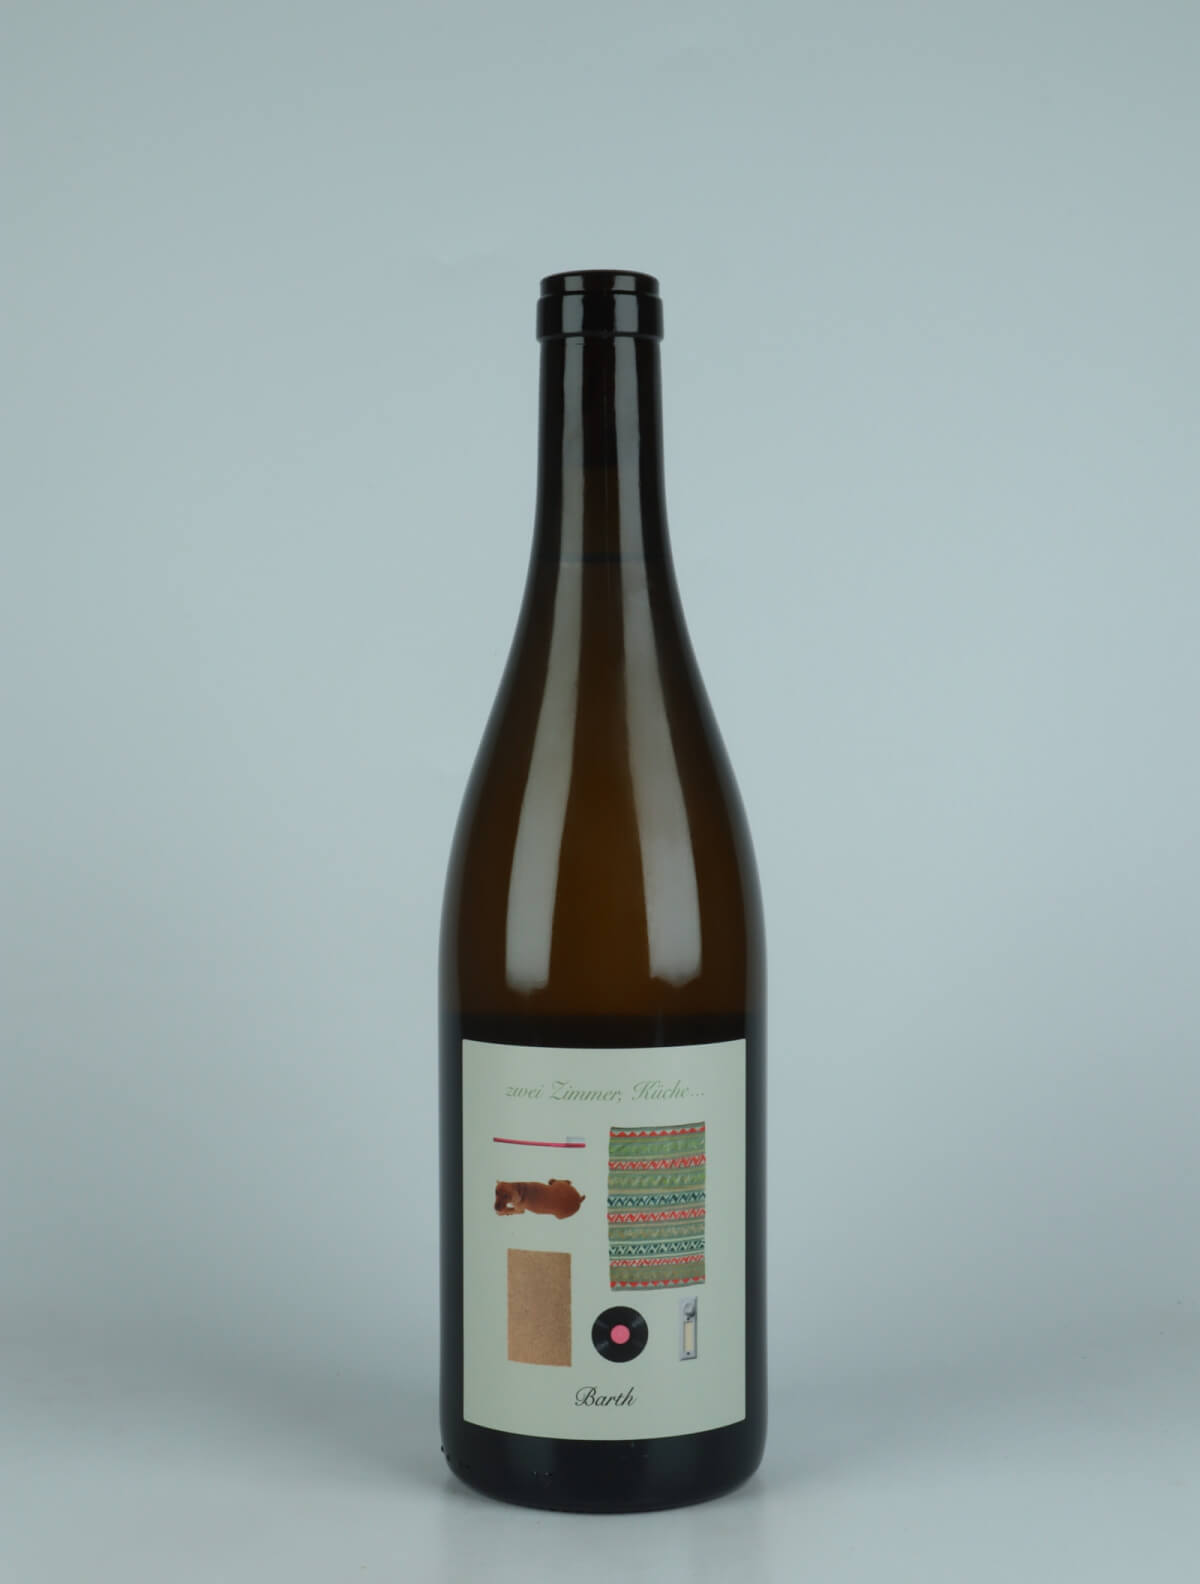 A bottle 2021 Zwei Zimmer, Küche, Barth White wine from Christopher Barth, Rheinhessen in Germany